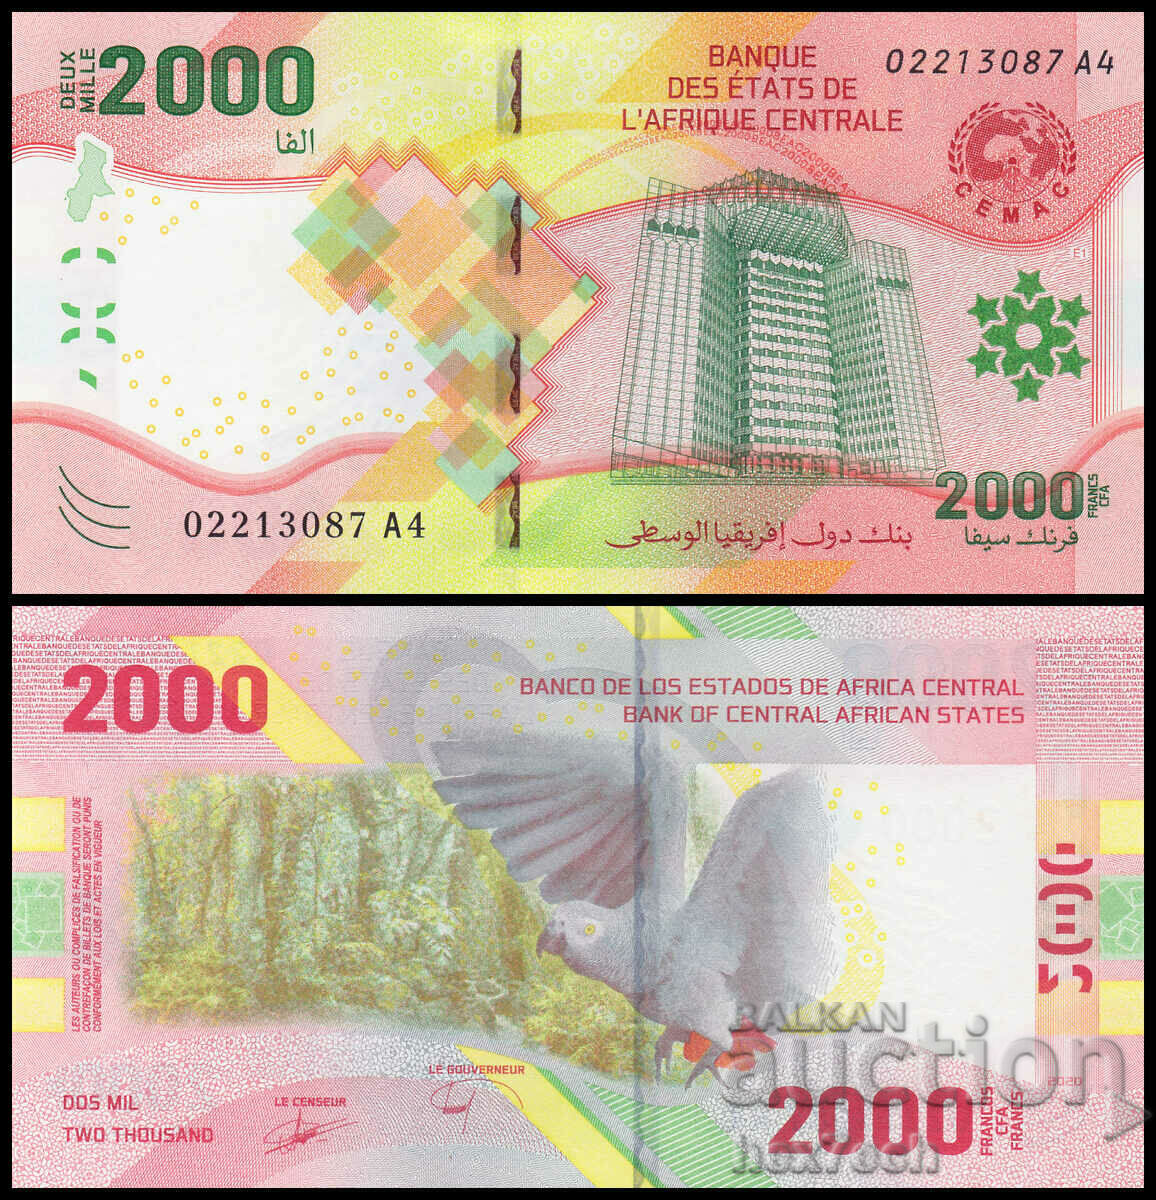 ❤️ ⭐ Κεντρική Αφρική 2020 2000 φράγκα UNC νέο ⭐ ❤️